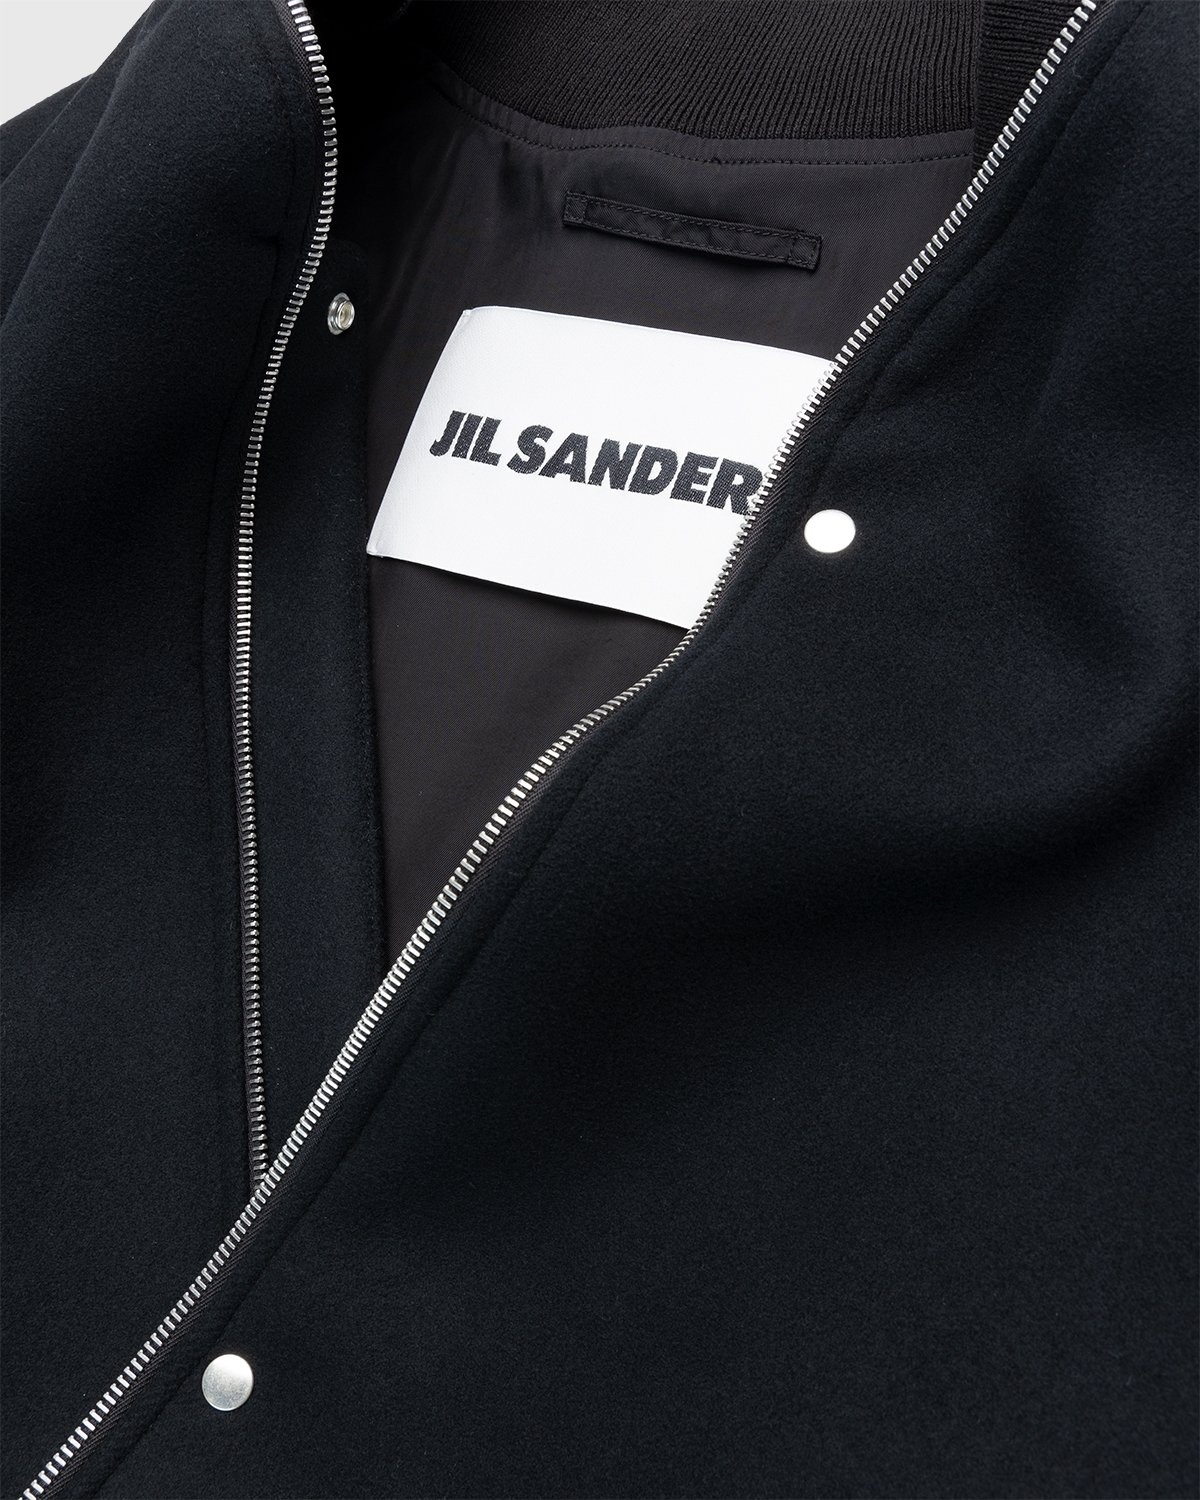 Jil Sander – Blouson Black - Outerwear - Black - Image 3